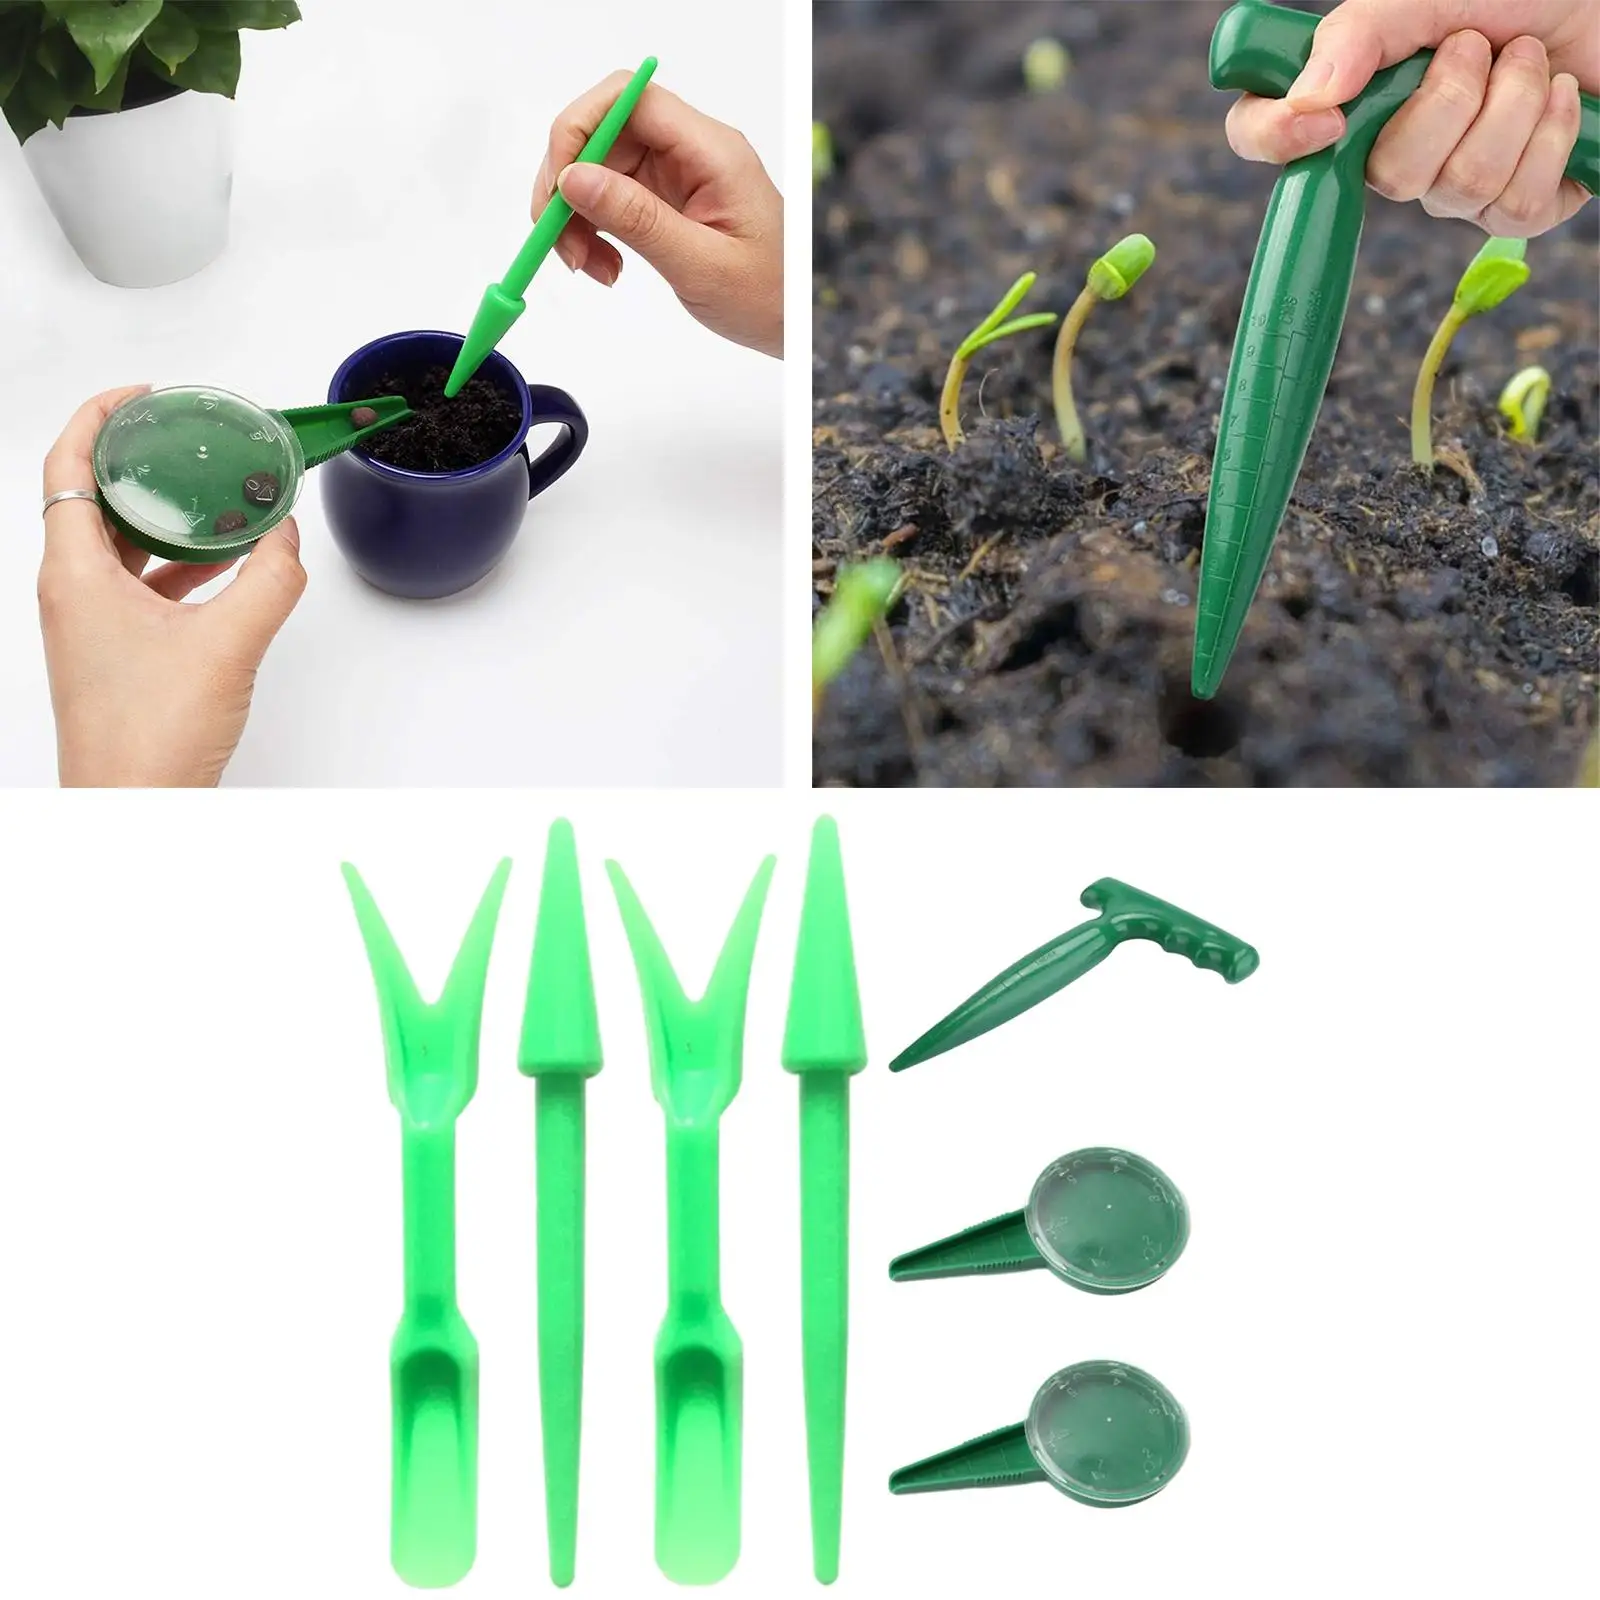 7Pcs Sowing Seeds Dispenser Set Manual Sower for Indoor Planting Vegetables Garden Plant Pot Tool Sets Planting Flowers